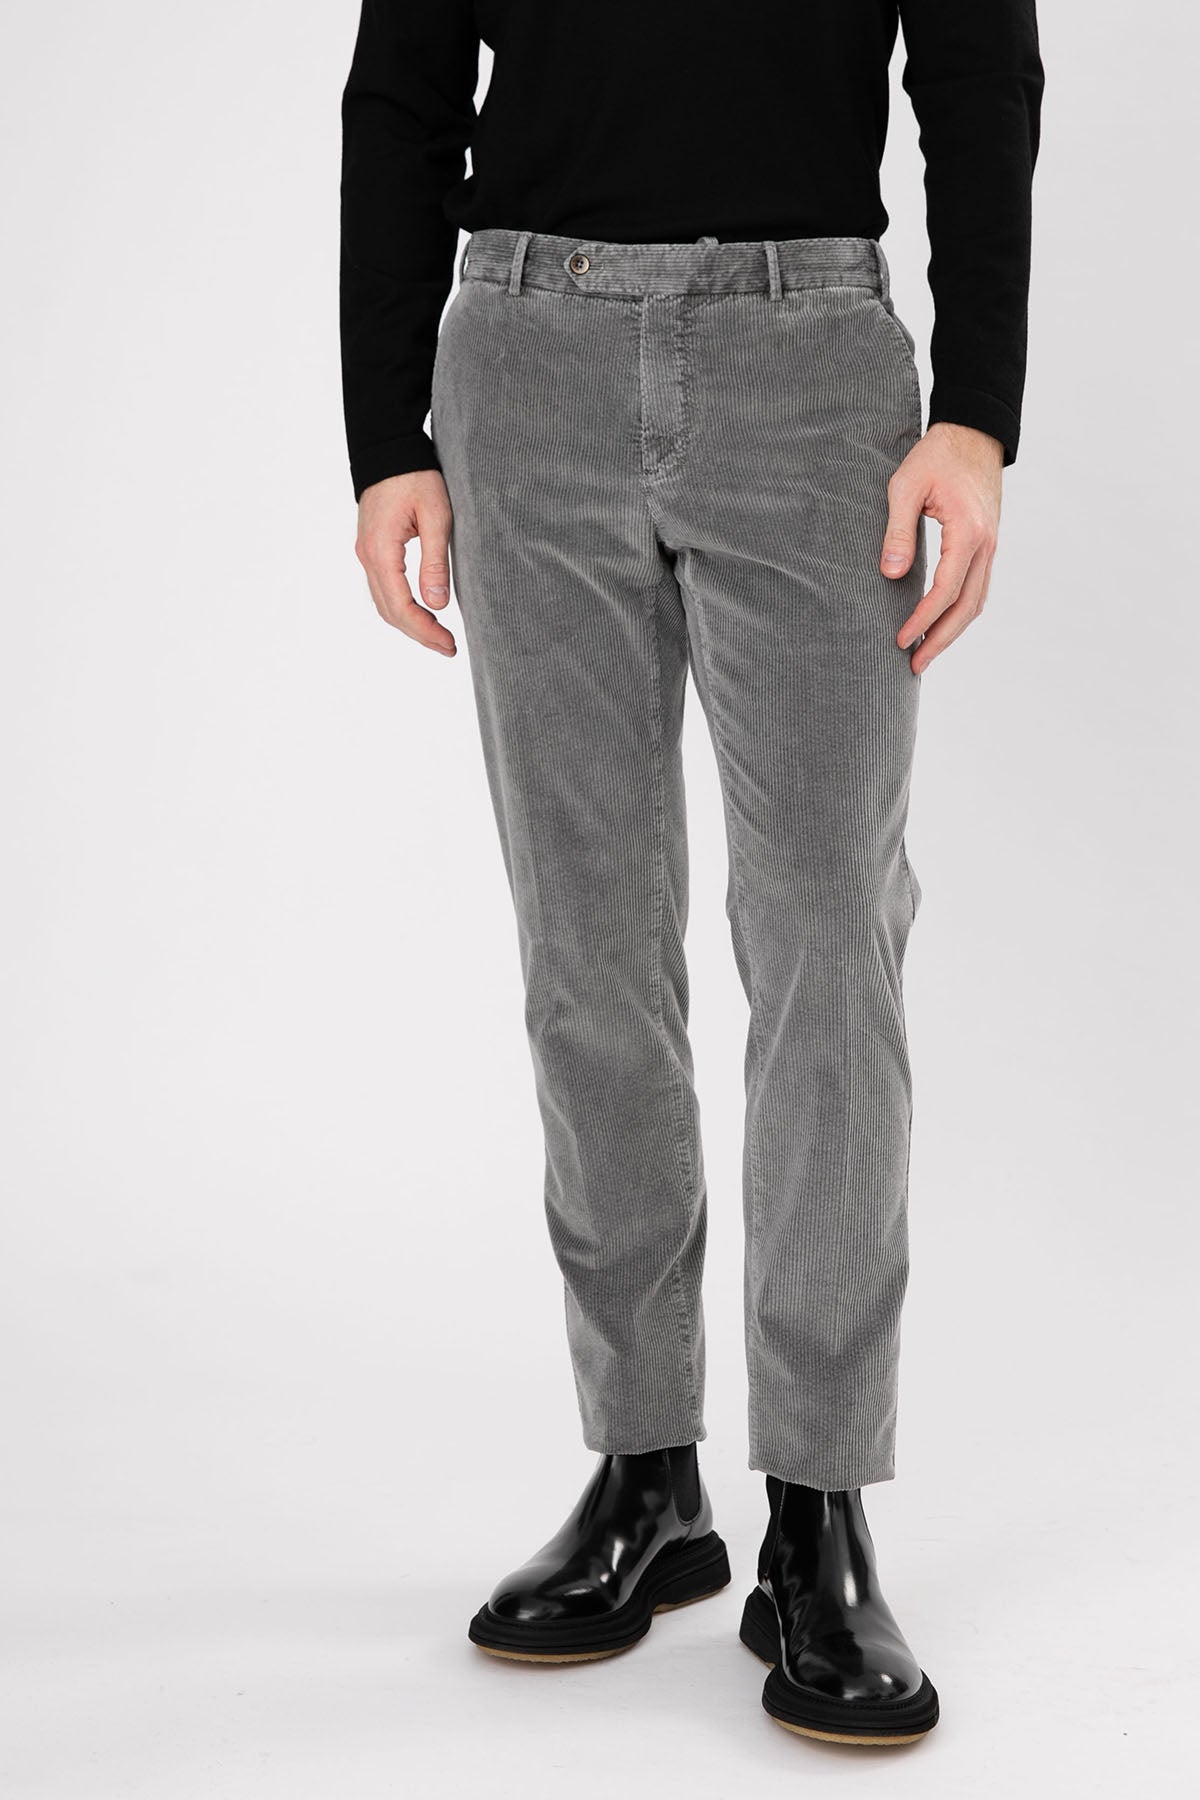 Pantaloni Torino Slim Fit Fitilli Kadife Pantolon-Libas Trendy Fashion Store